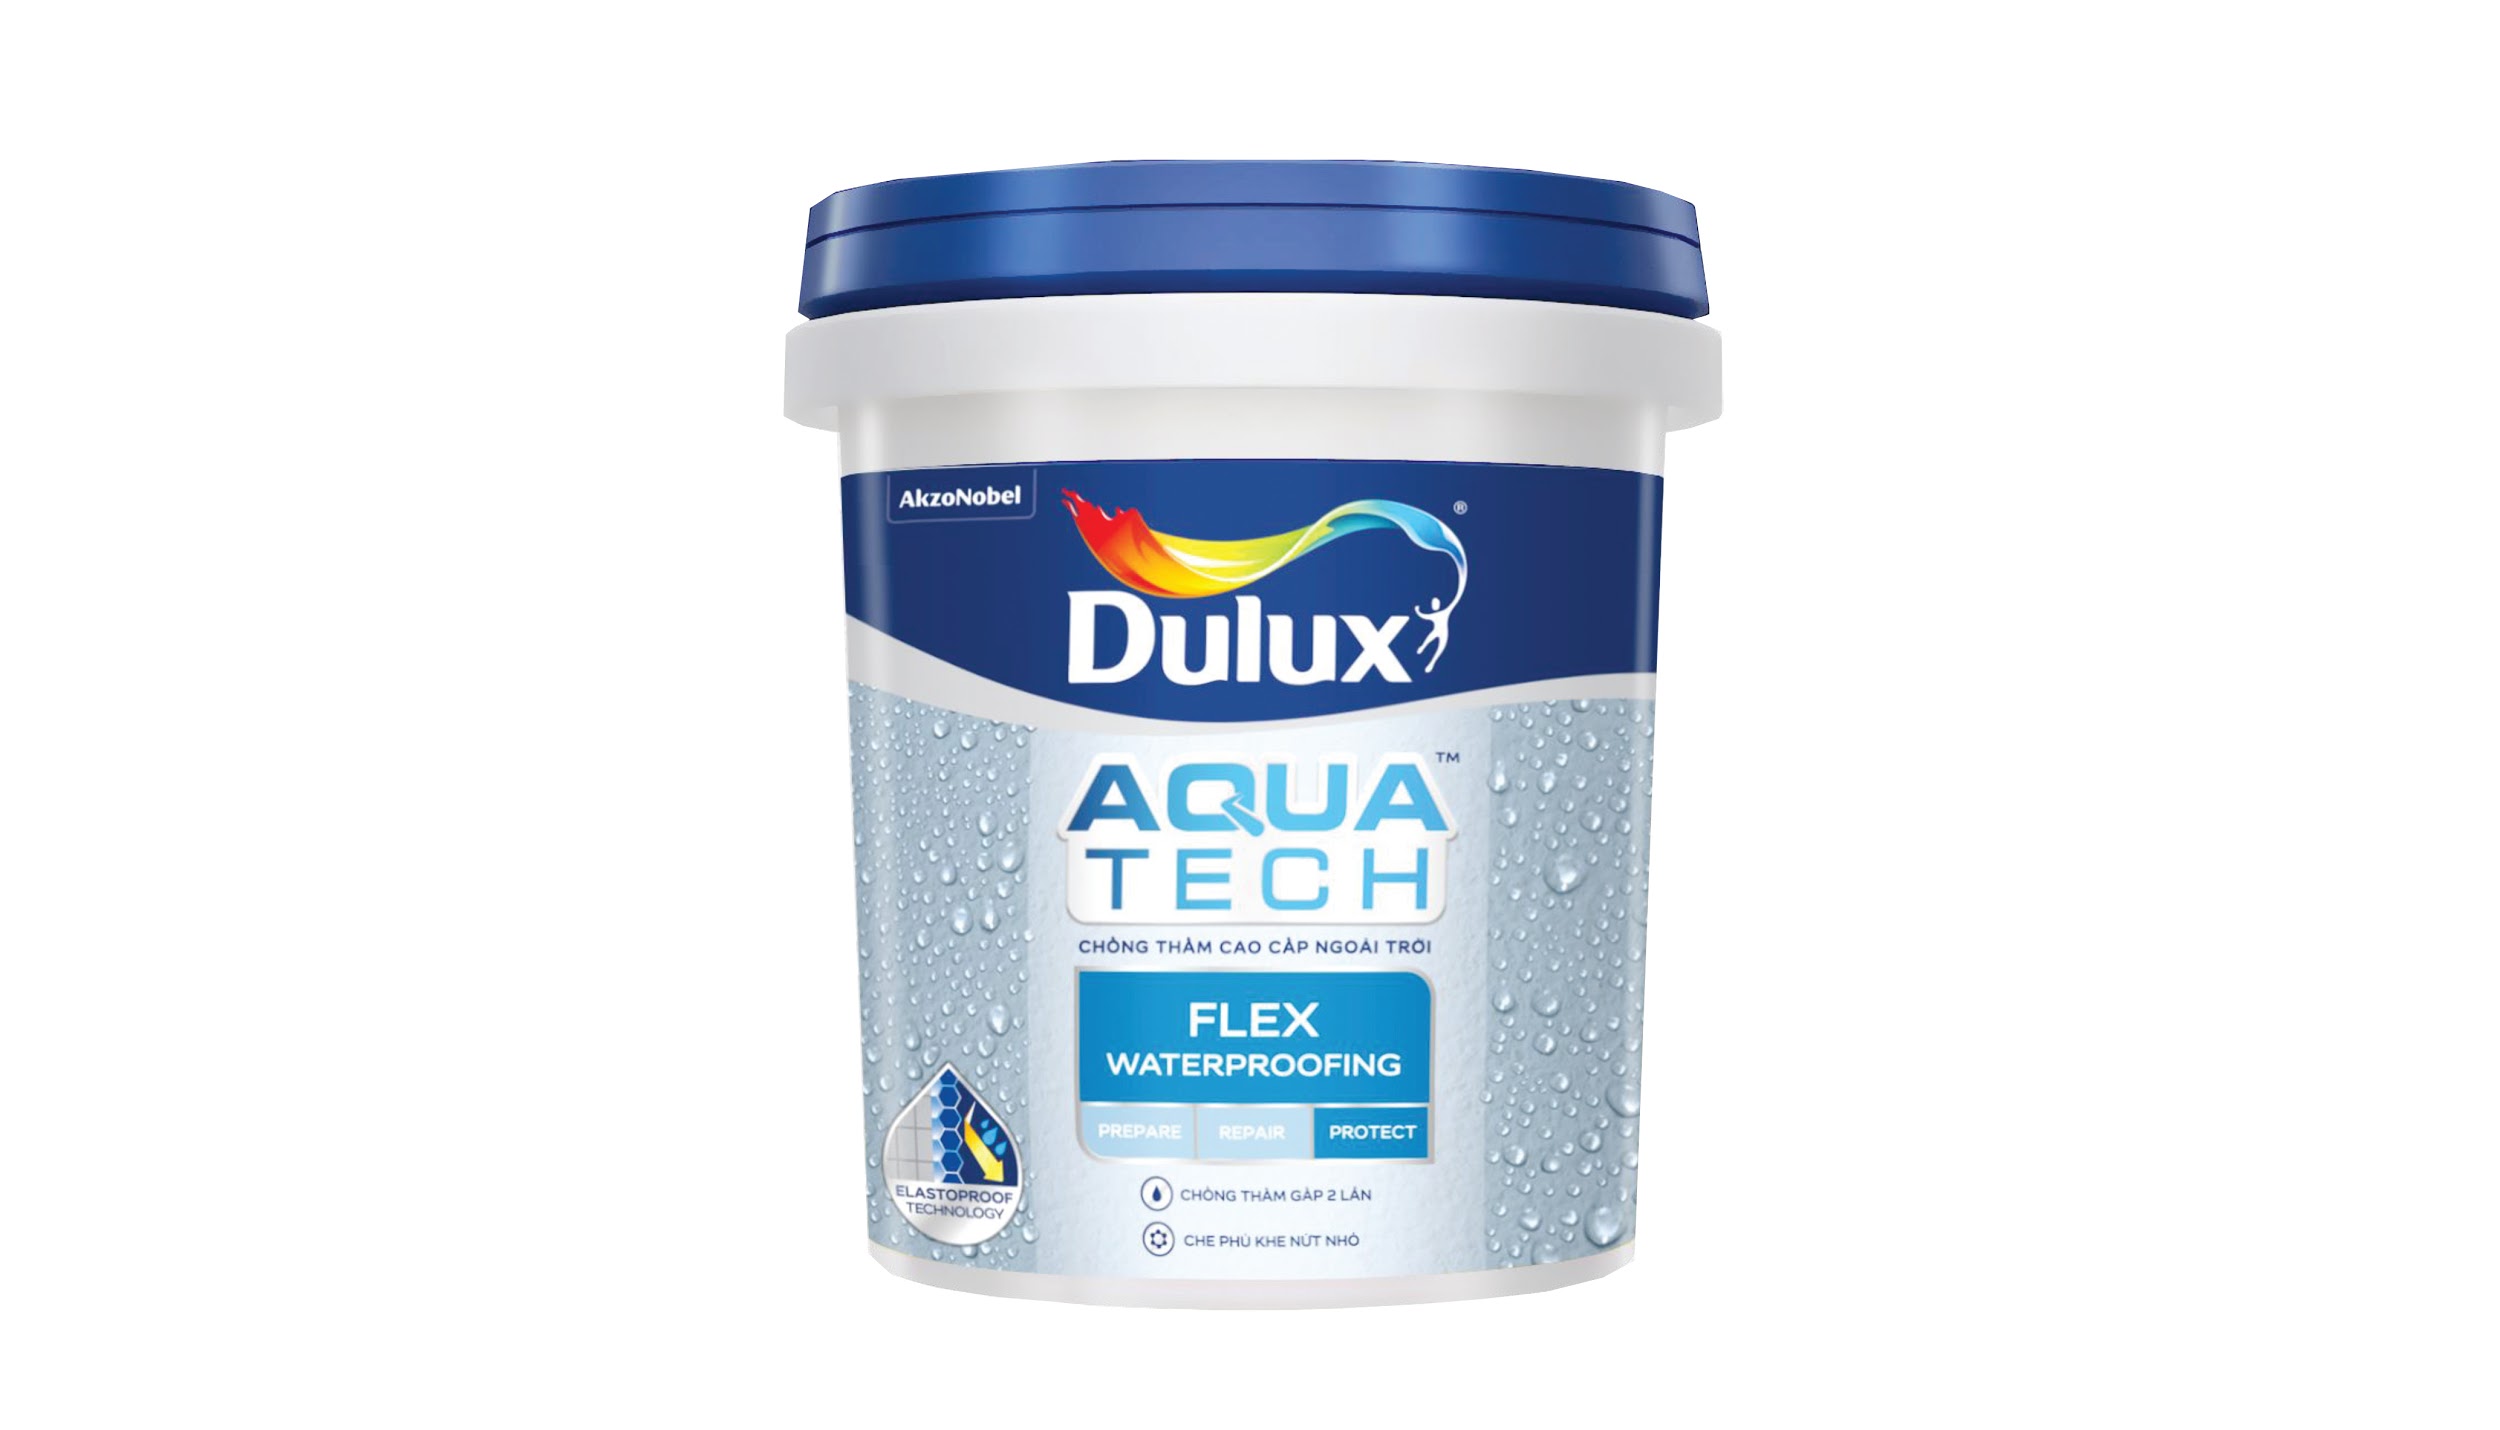 Tìm hiểu ưu nhược điểm của sơn Dulux chống thấm ngoài trời để lựa chọn sản phẩm phù hợp cho công trình của bạn. Hãy xem hình ảnh liên quan để cập nhật những thông tin mới nhất về sản phẩm này!